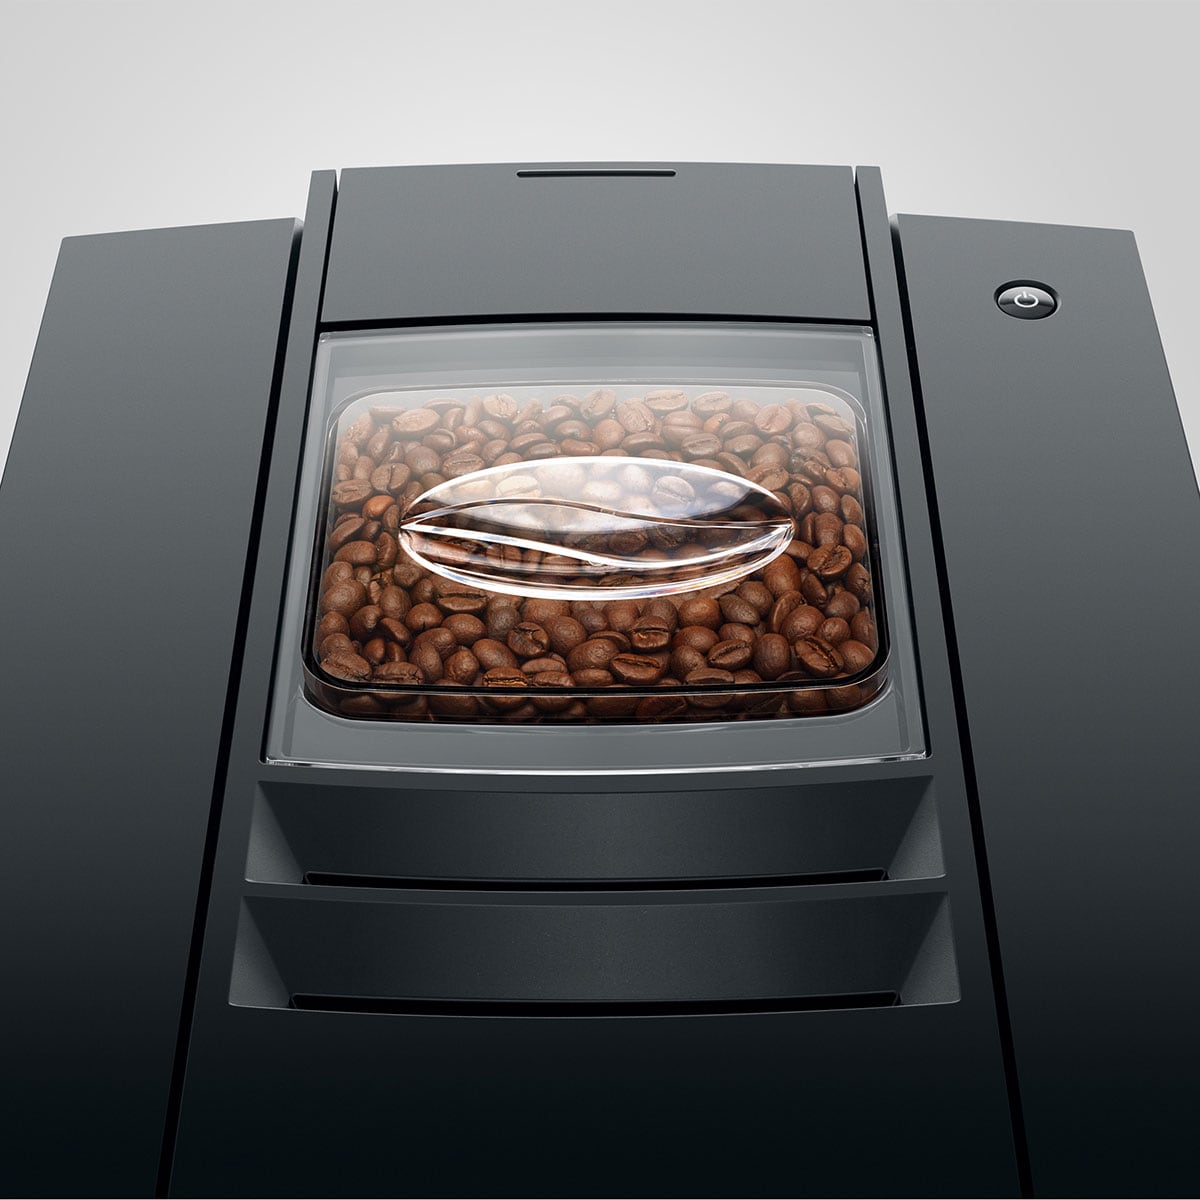 JURA E8 Fully Automatic Espresso Machine